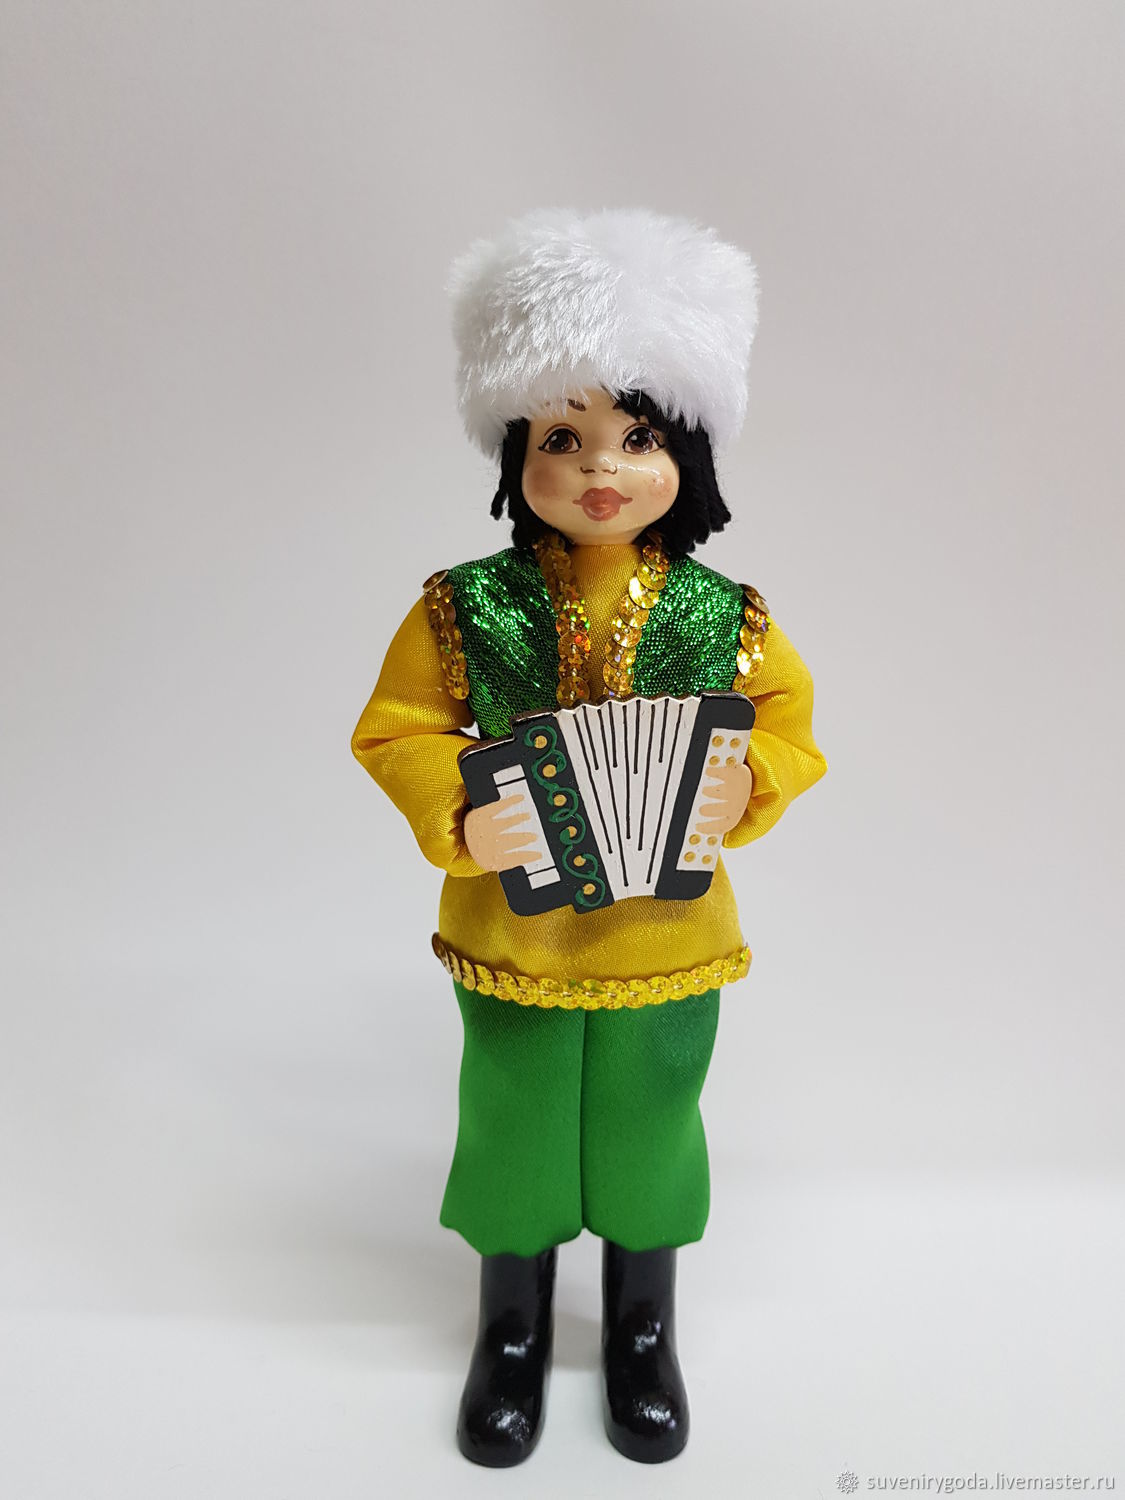 Купить куклу в татарском национальном костюме: цены, фото